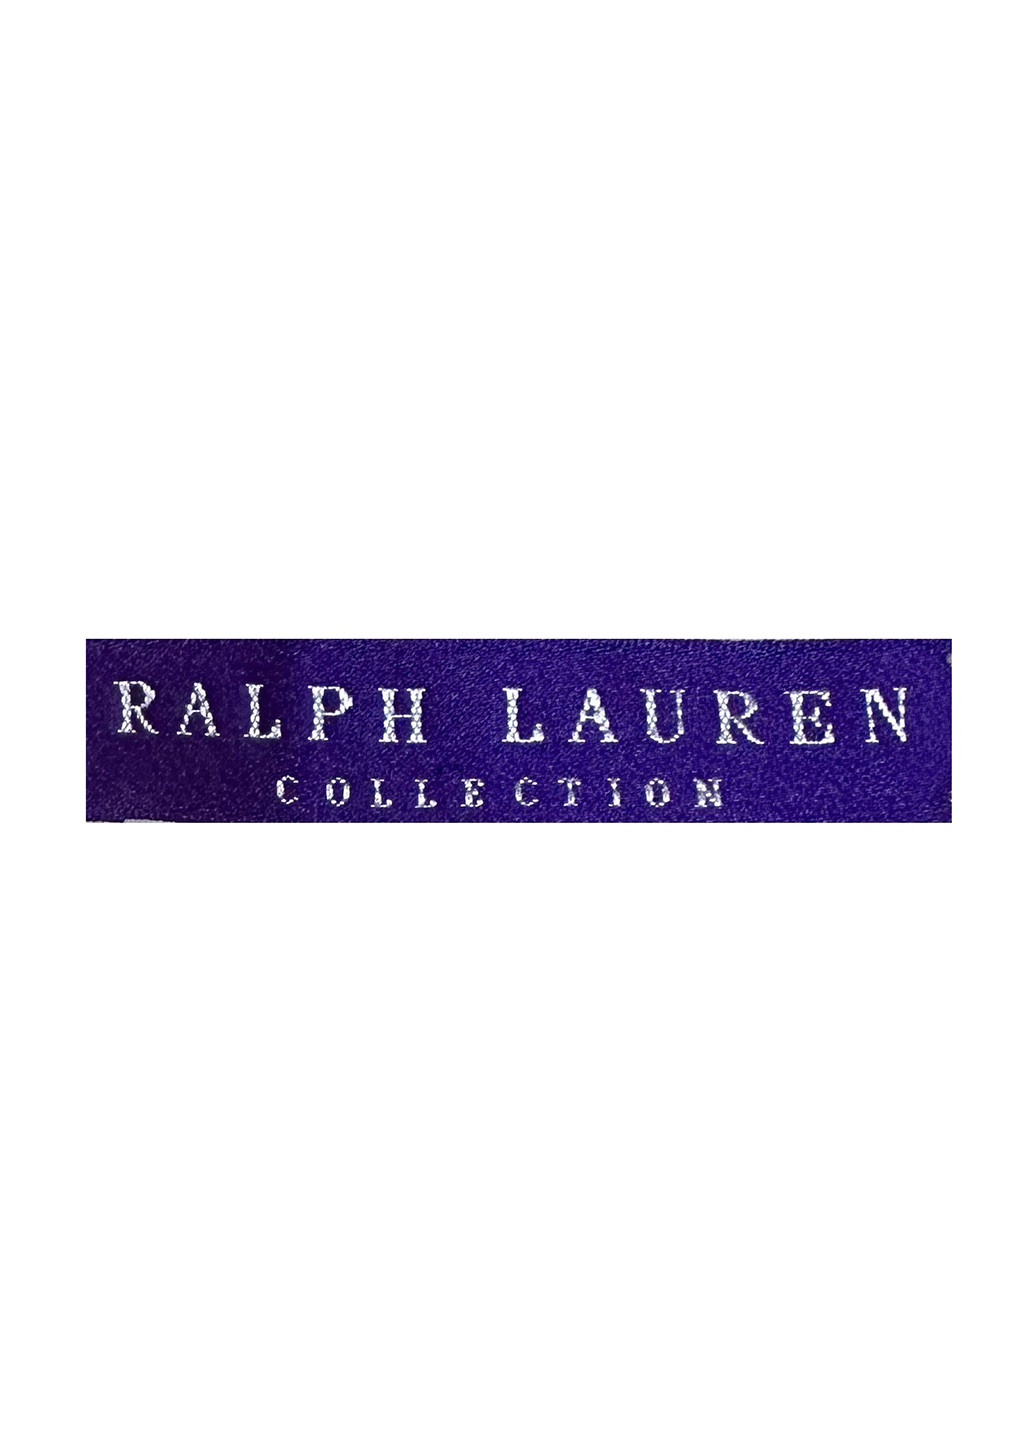 Черный демисезонный джемпер джемпер Ralph Lauren